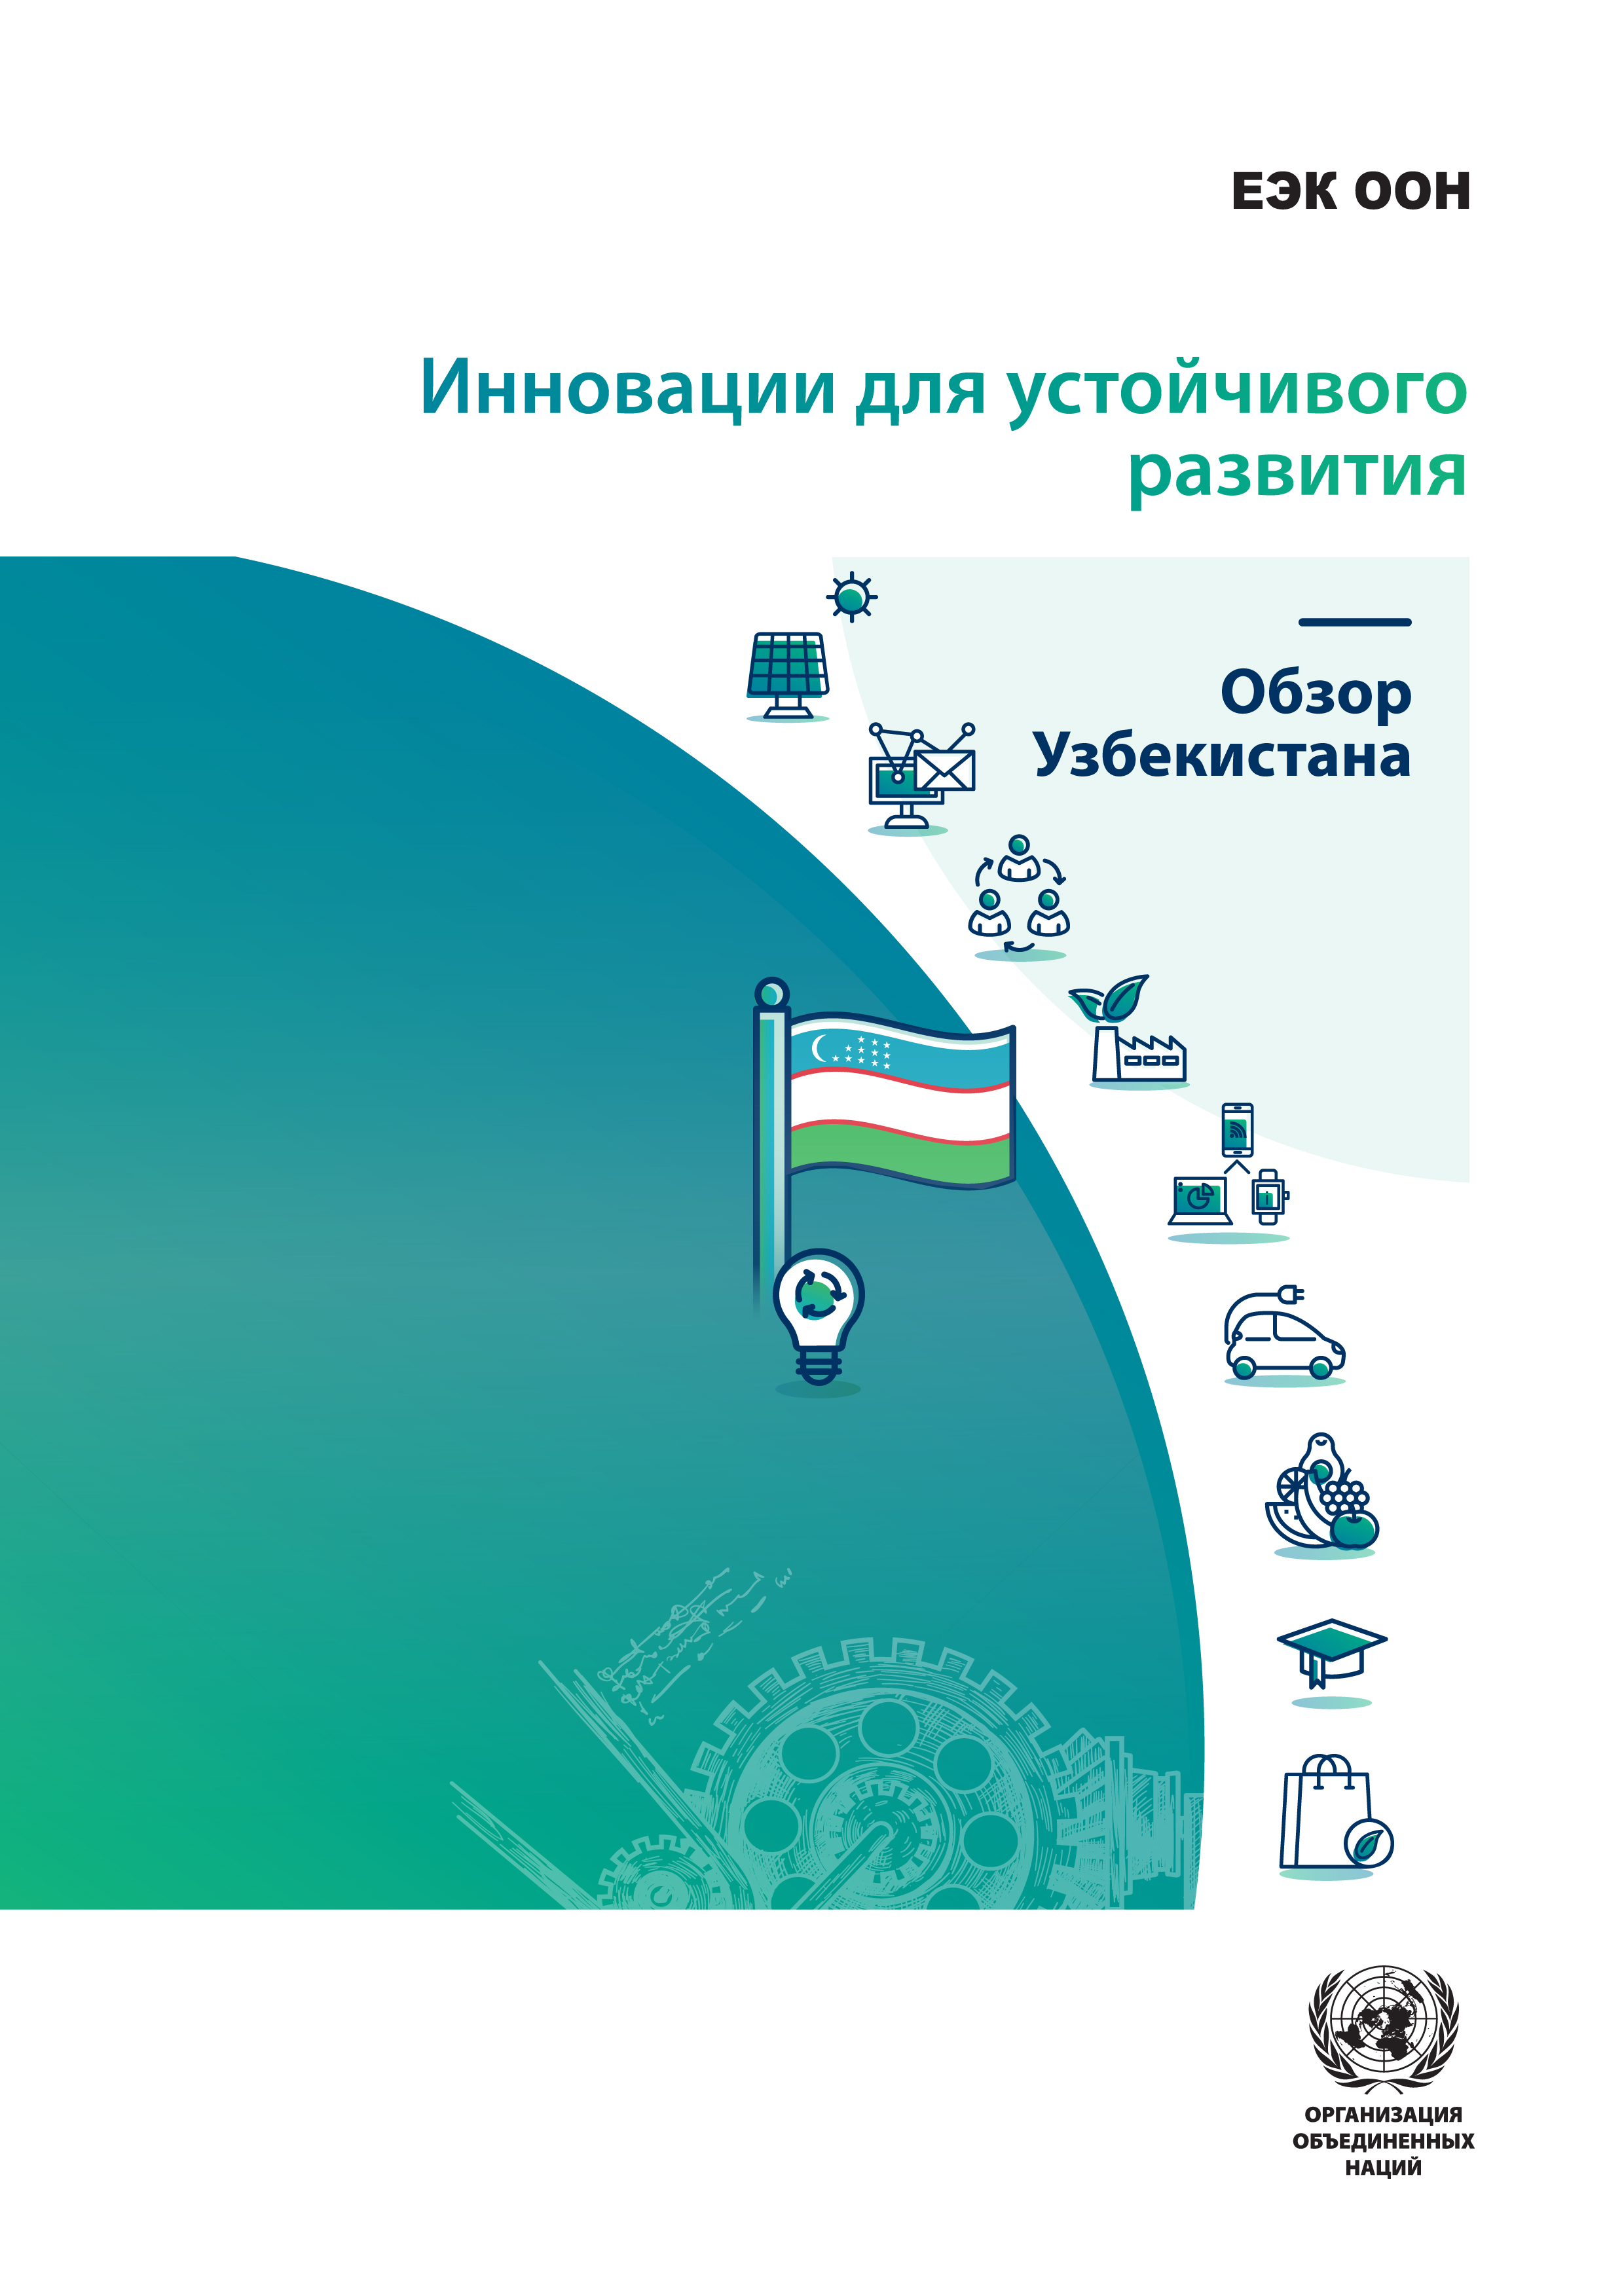 image of Инновации для устойчивого развития - Обзор Узбекистана